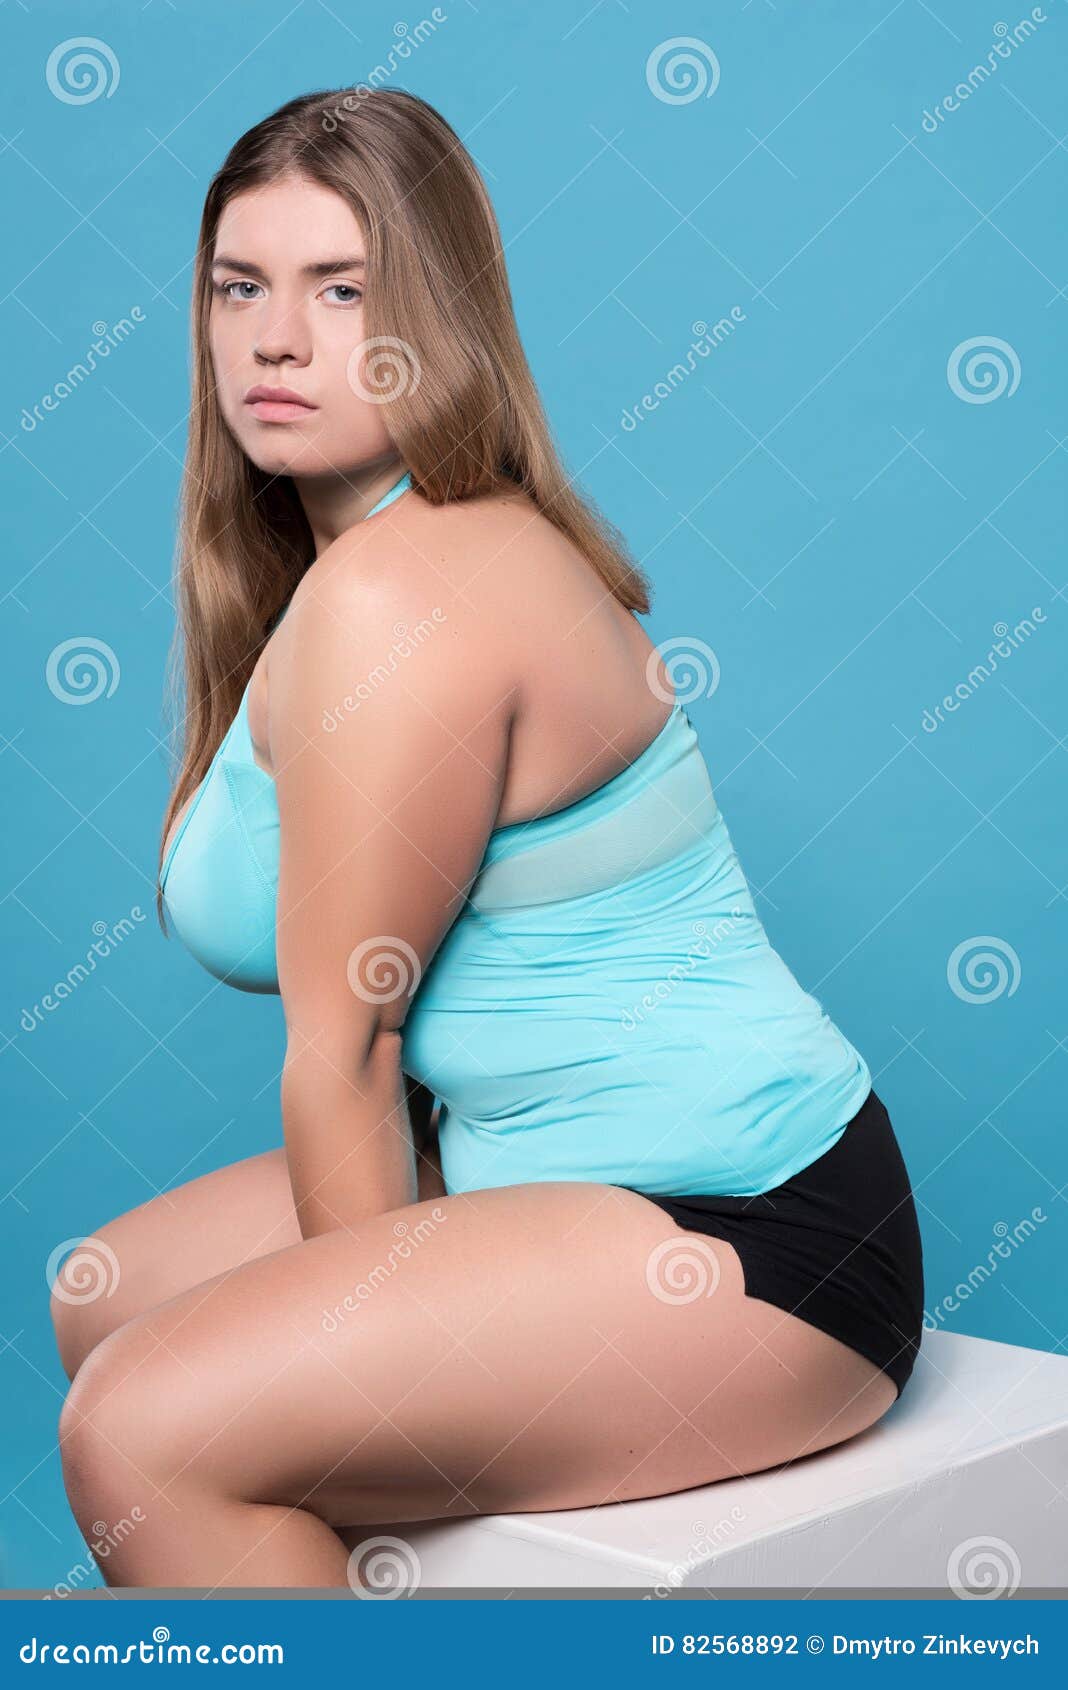 Chubby women photos